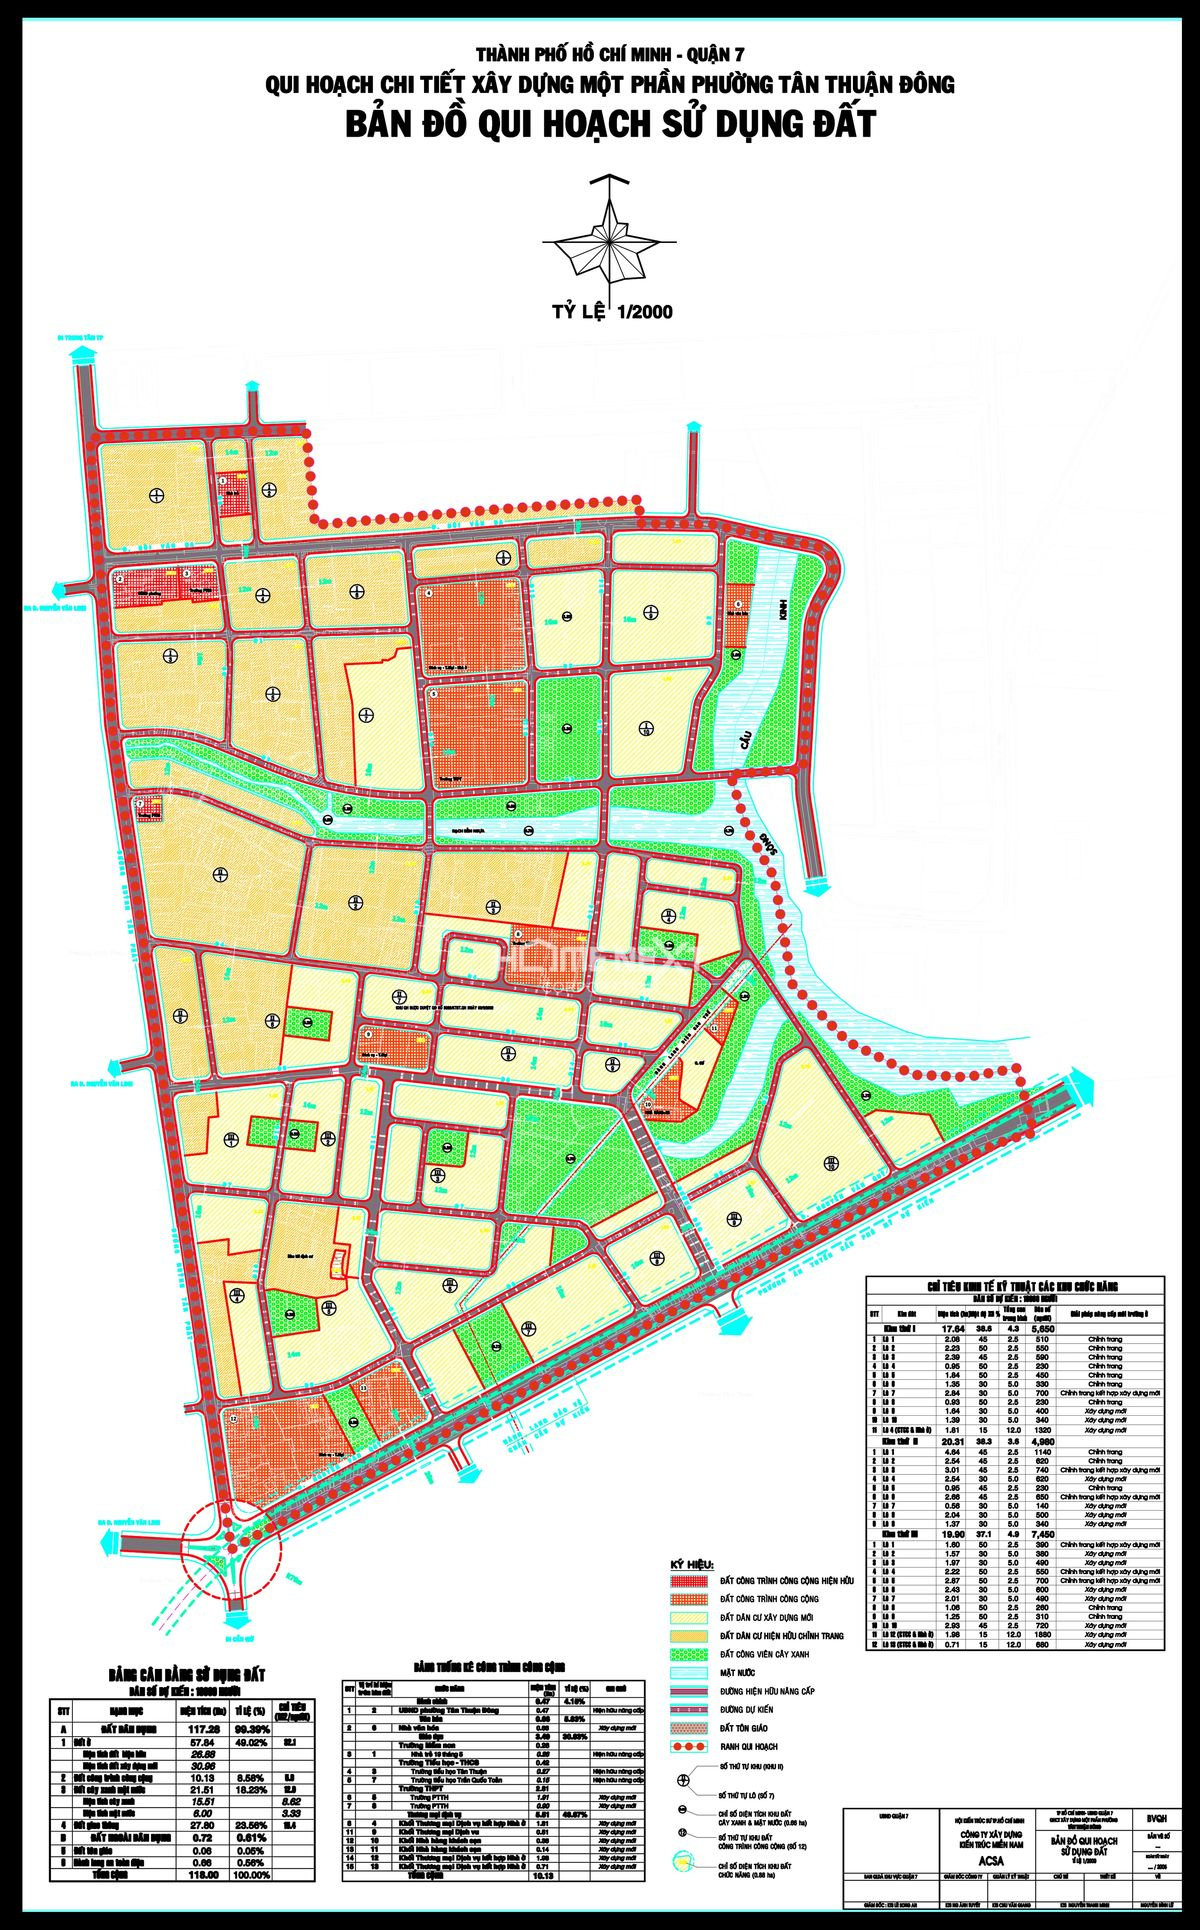 Cập nhật mới nhất của bản đồ Quận 7 TP.HCM giúp bạn nắm rõ những thay đổi đáng kể về quy hoạch phường Tân Kiểng và có cái nhìn chi tiết về sự phát triển của quận trong tương lai. Đừng bỏ lỡ cơ hội để khám phá ngay bây giờ!